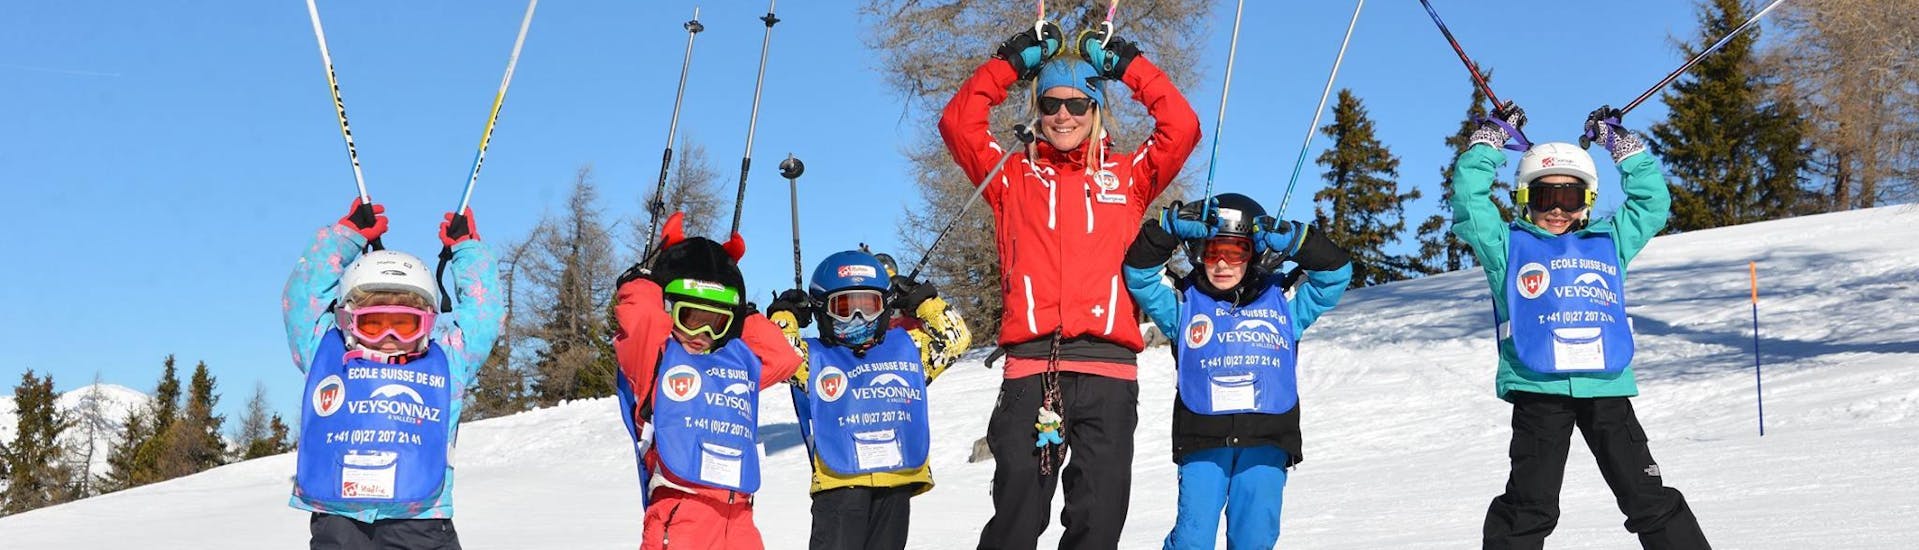 Cours de ski Enfants (6-12 ans) - Expérimentés - Après-midi avec École Suisse de Ski de Veysonnaz - Hero image